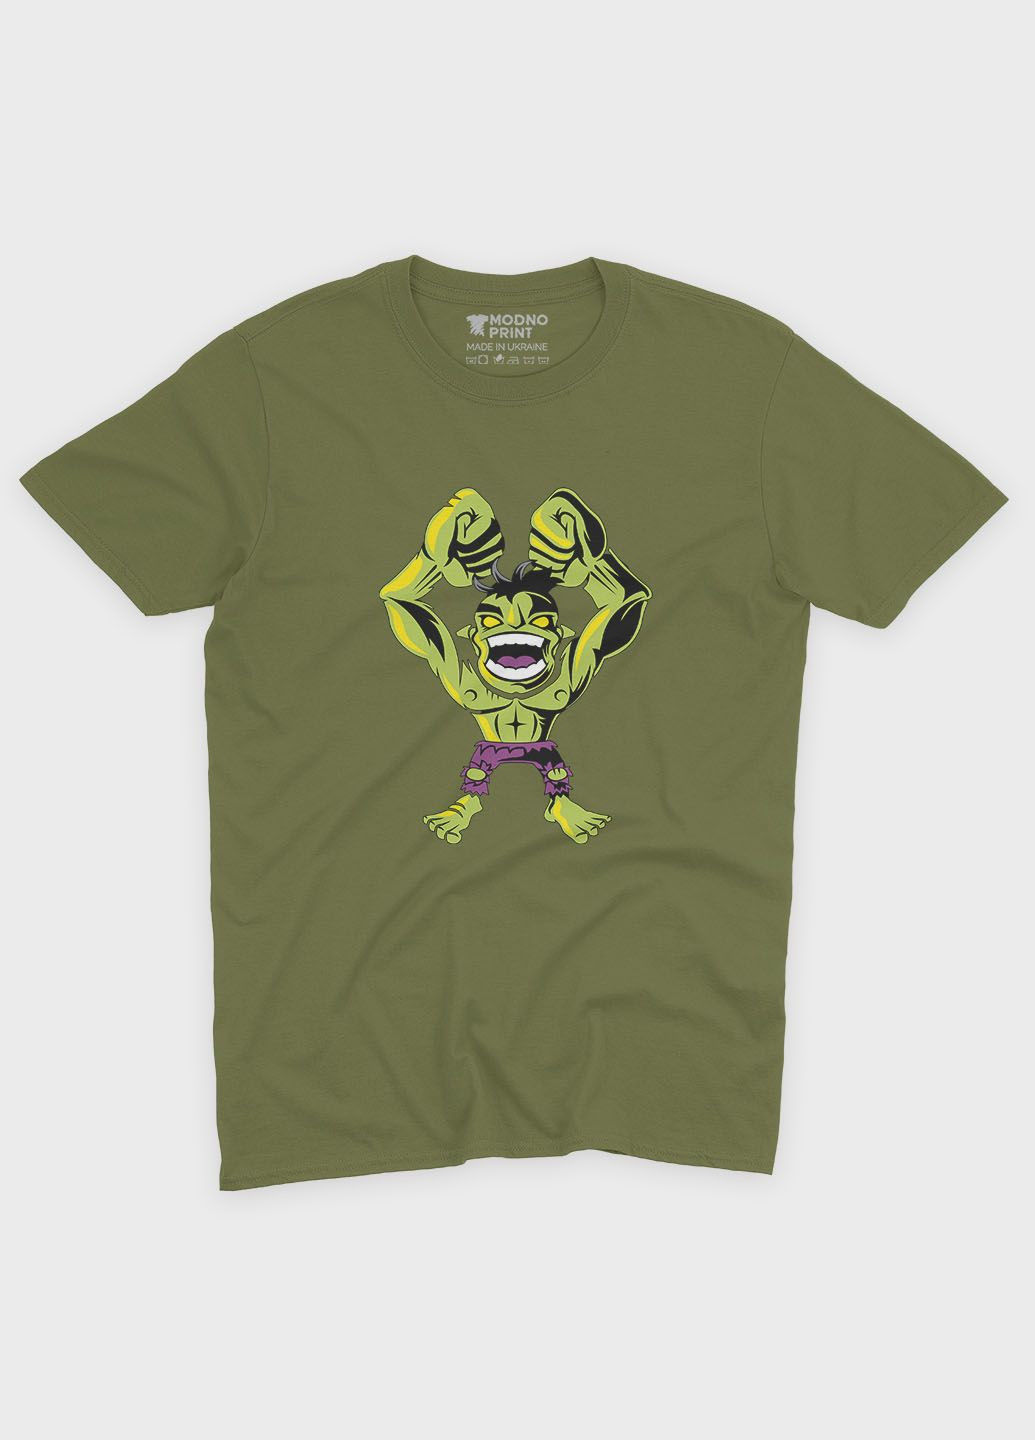 Хаки (оливковая) мужская футболка с принтом супергероя - халк (ts001-1-hgr-006-018-002) Modno